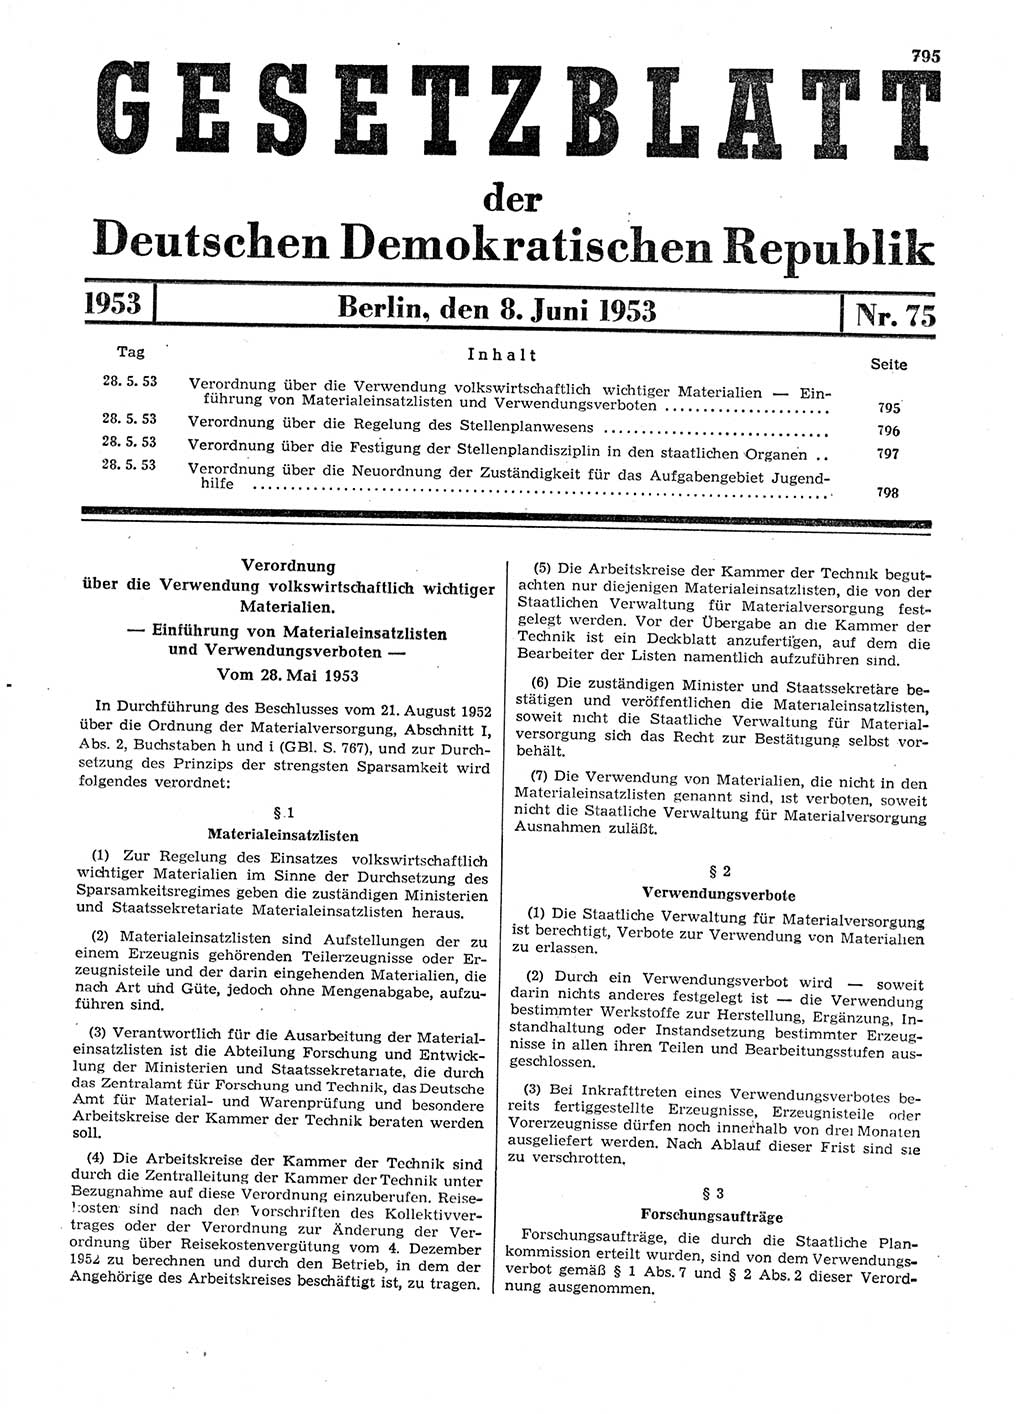 Gesetzblatt (GBl.) der Deutschen Demokratischen Republik (DDR) 1953, Seite 795 (GBl. DDR 1953, S. 795)